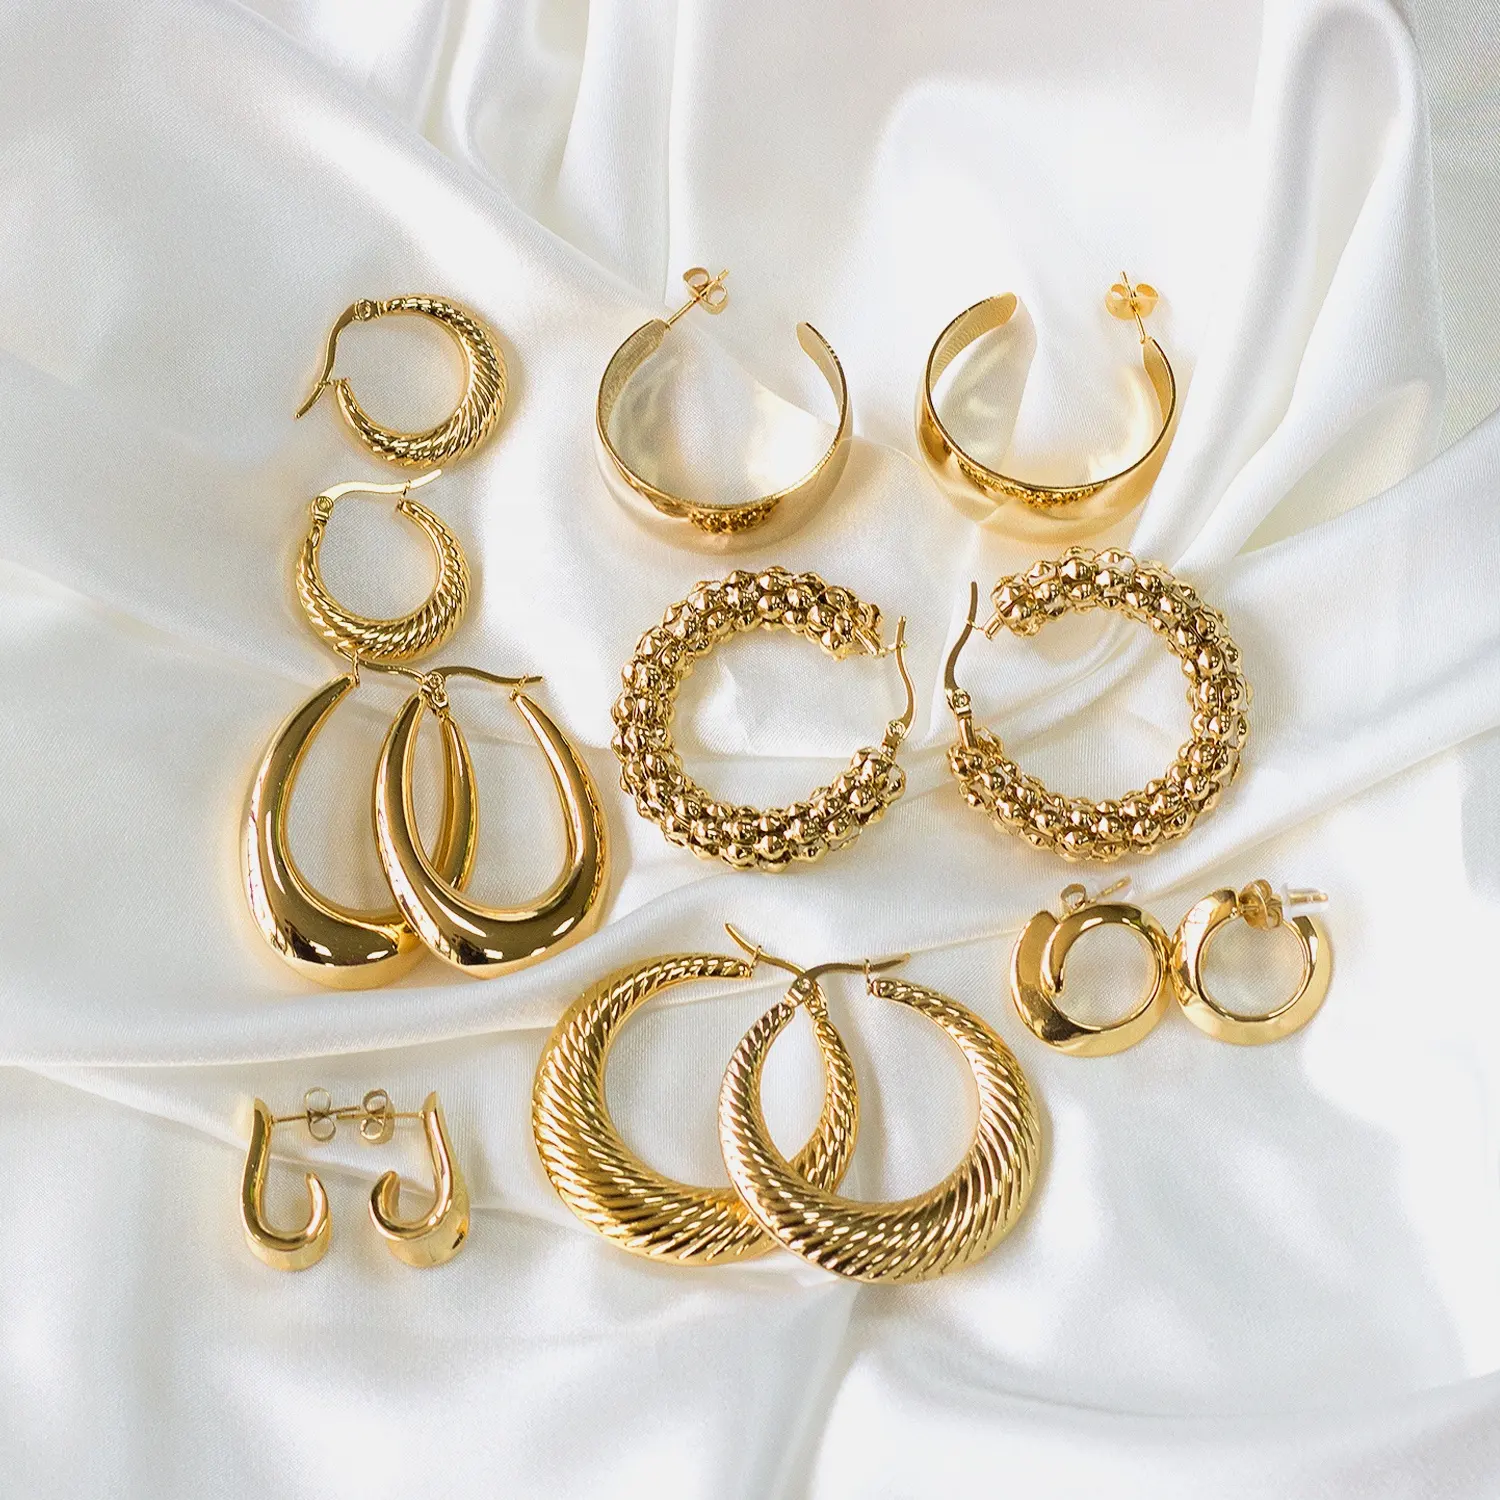 Gold Jewelry Earring Type 18K Big Steel Hoop Earrings For Women